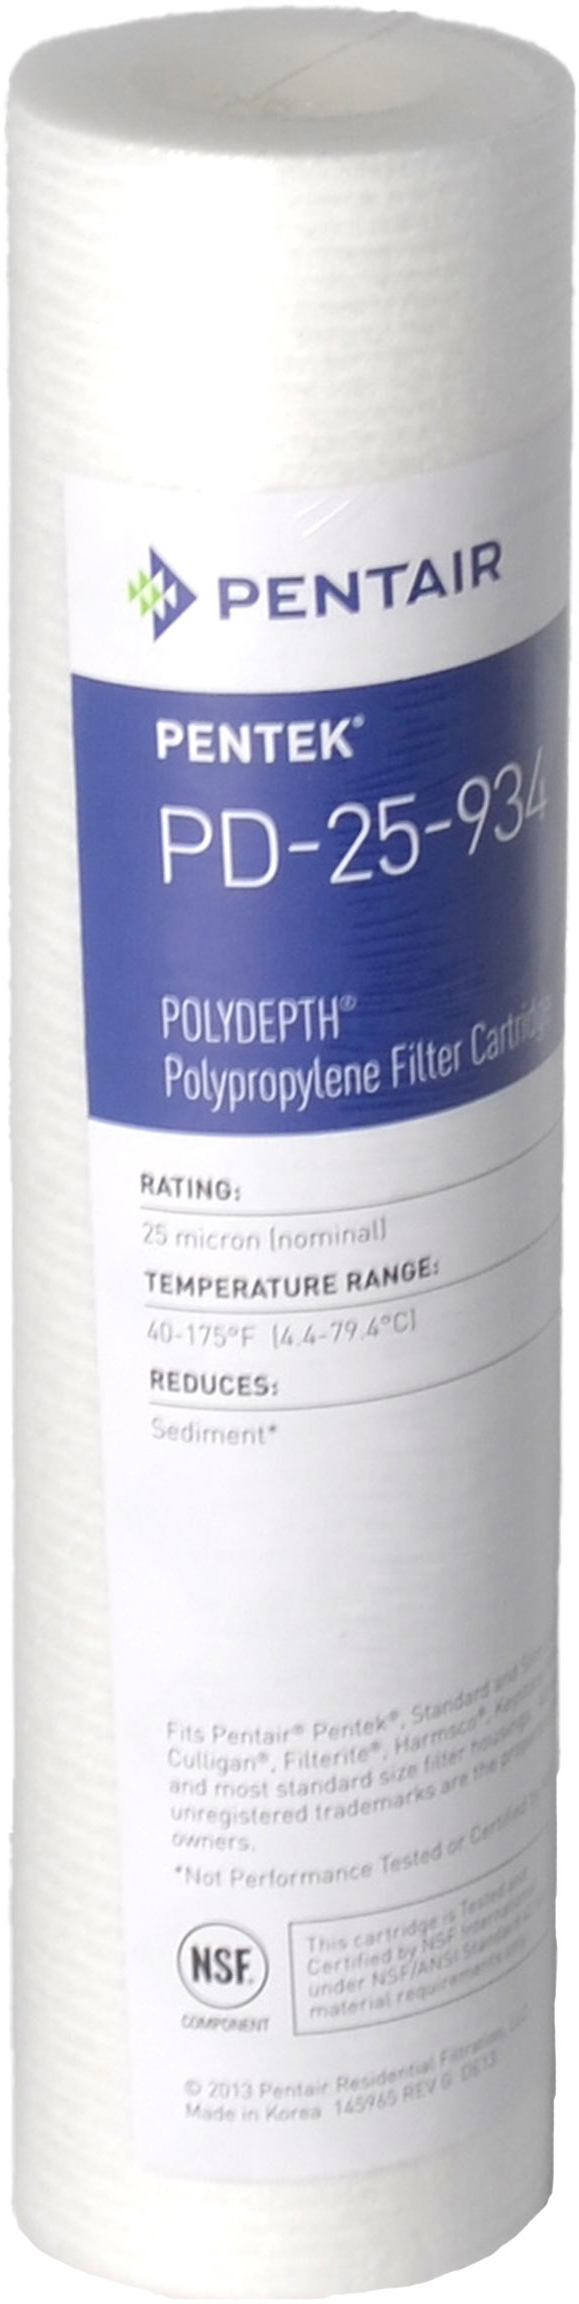 Картридж для горячей воды Pentek PD-25-934 Polydepth (155751-43)